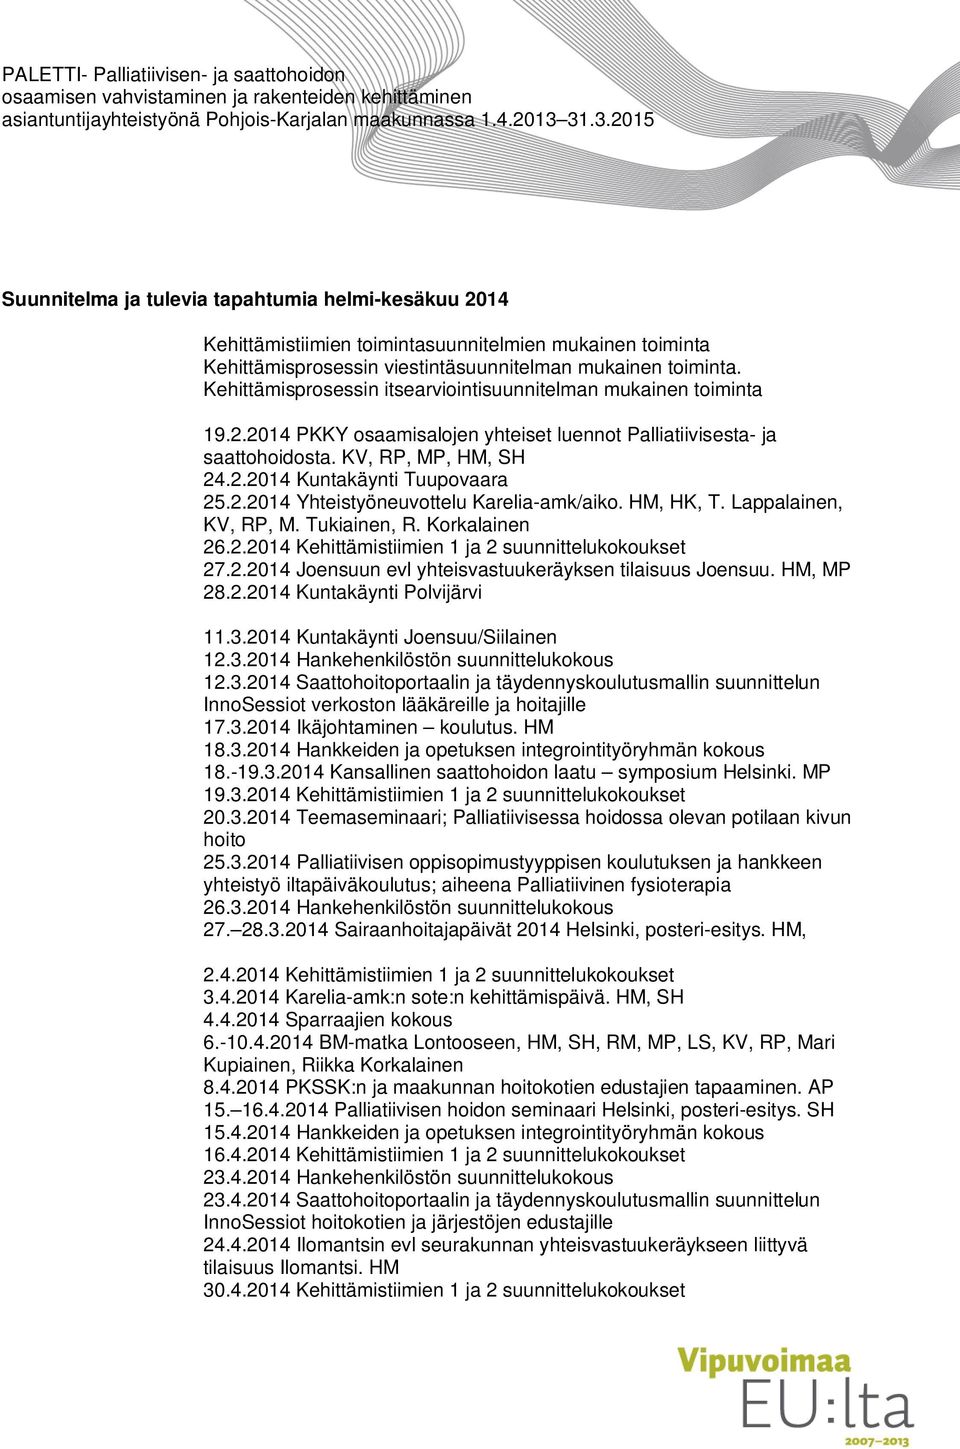 2.2014 Yhteistyöneuvottelu Karelia-amk/aiko. HM, HK, T. Lappalainen, KV, RP, M. Tukiainen, R. Korkalainen 26.2.2014 Kehittämistiimien 1 ja 2 suunnittelukokoukset 27.2.2014 Joensuun evl yhteisvastuukeräyksen tilaisuus Joensuu.